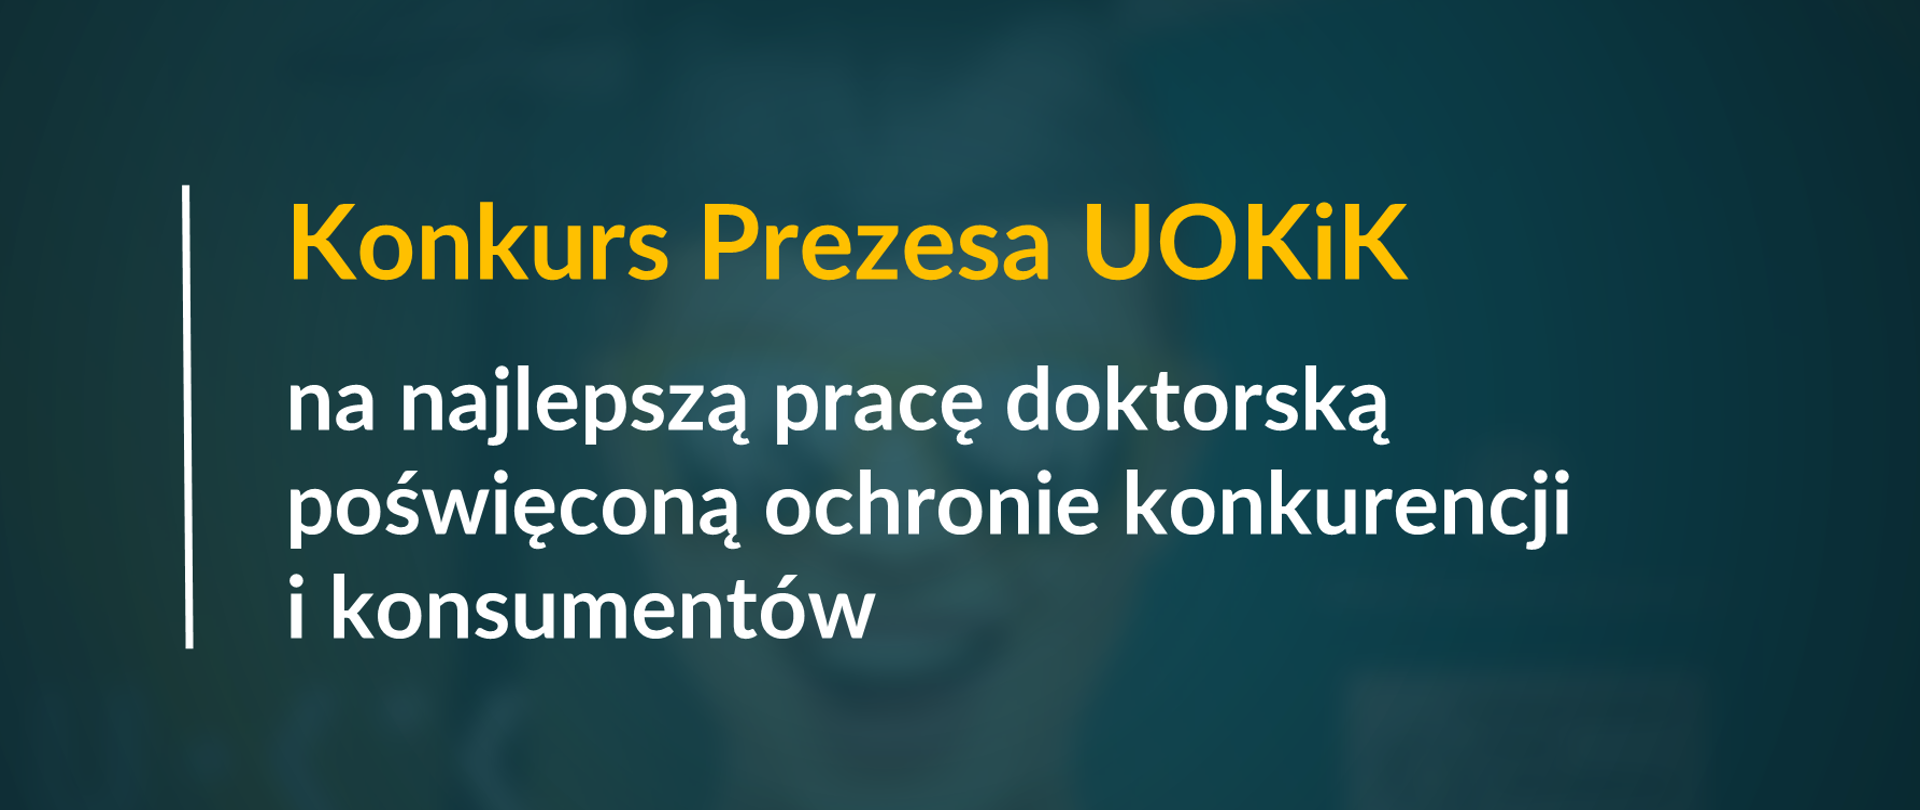 Grafika z tekstem: "Konkurs Prezesa UOKiK na najlepszą pracę doktorską poświęconą ochronie konkurencji i konsumentów"